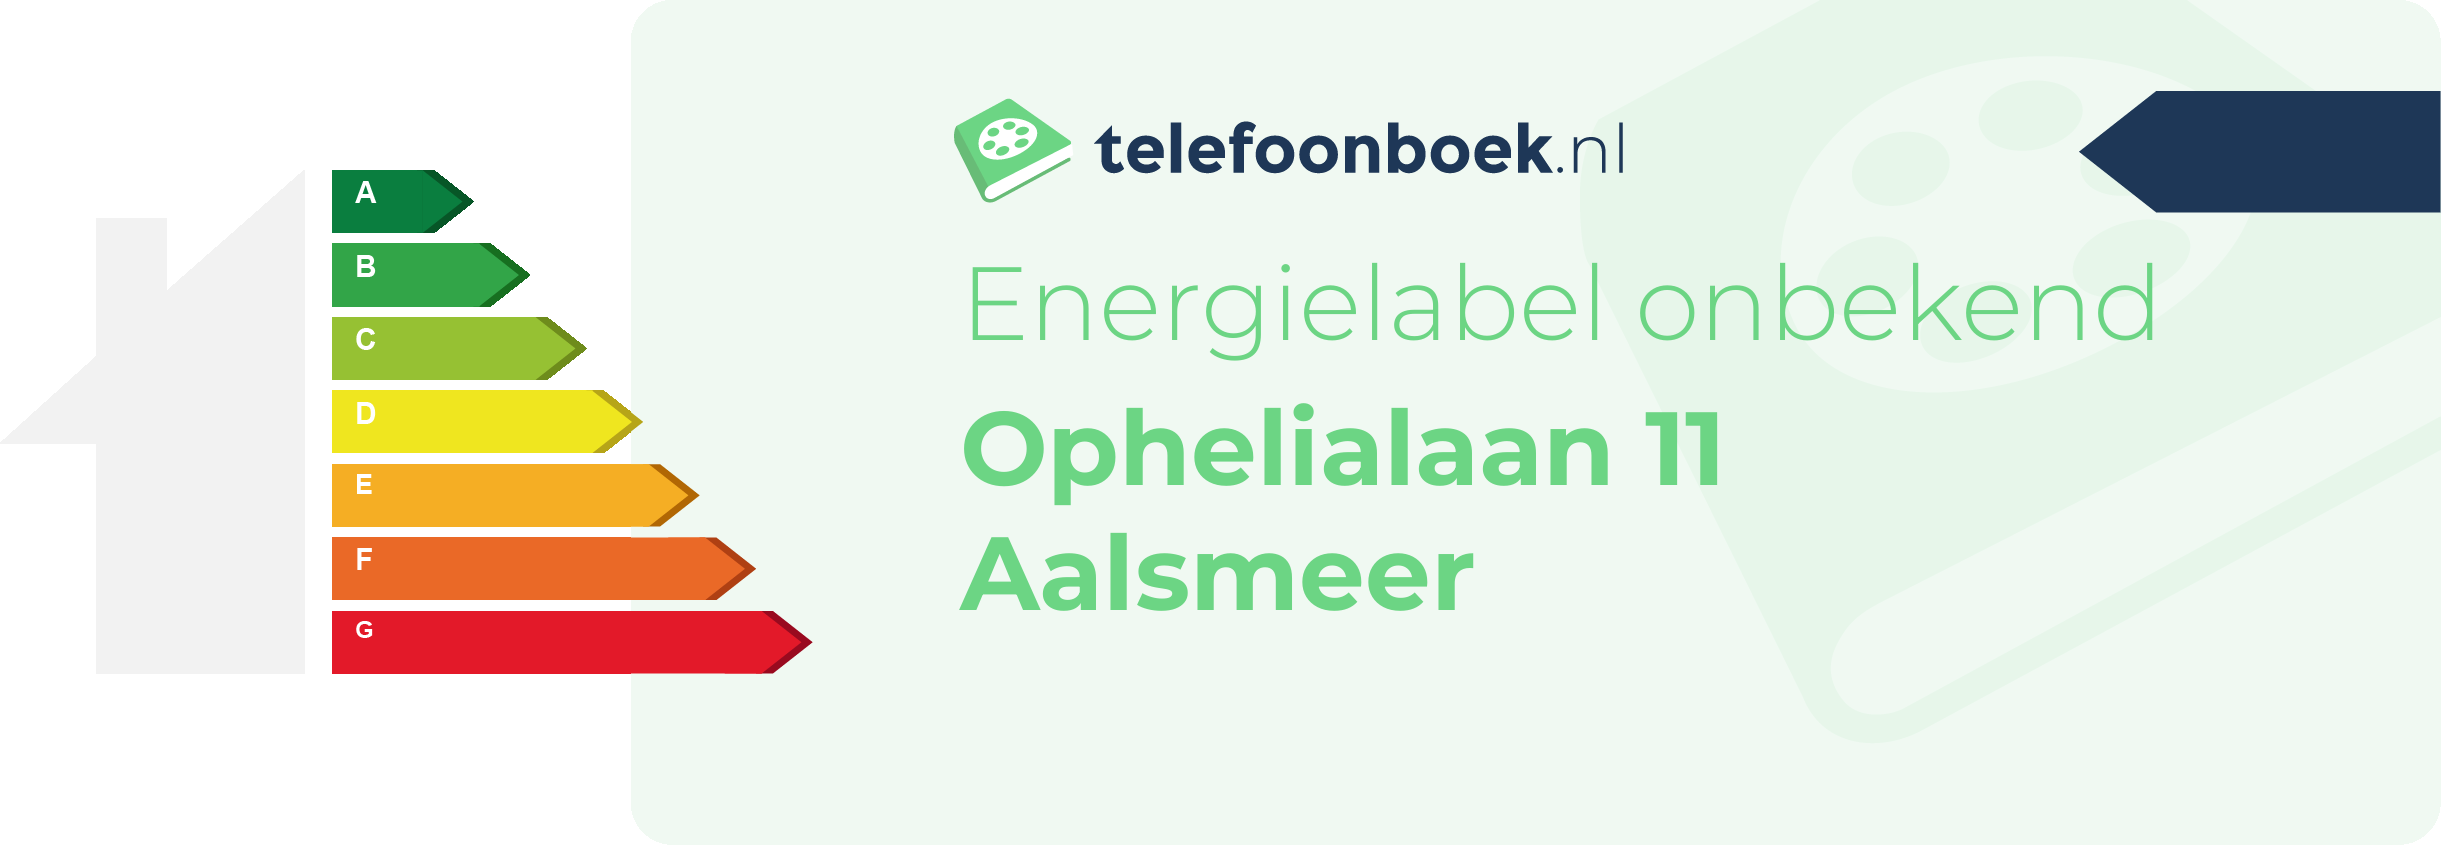 Energielabel Ophelialaan 11 Aalsmeer